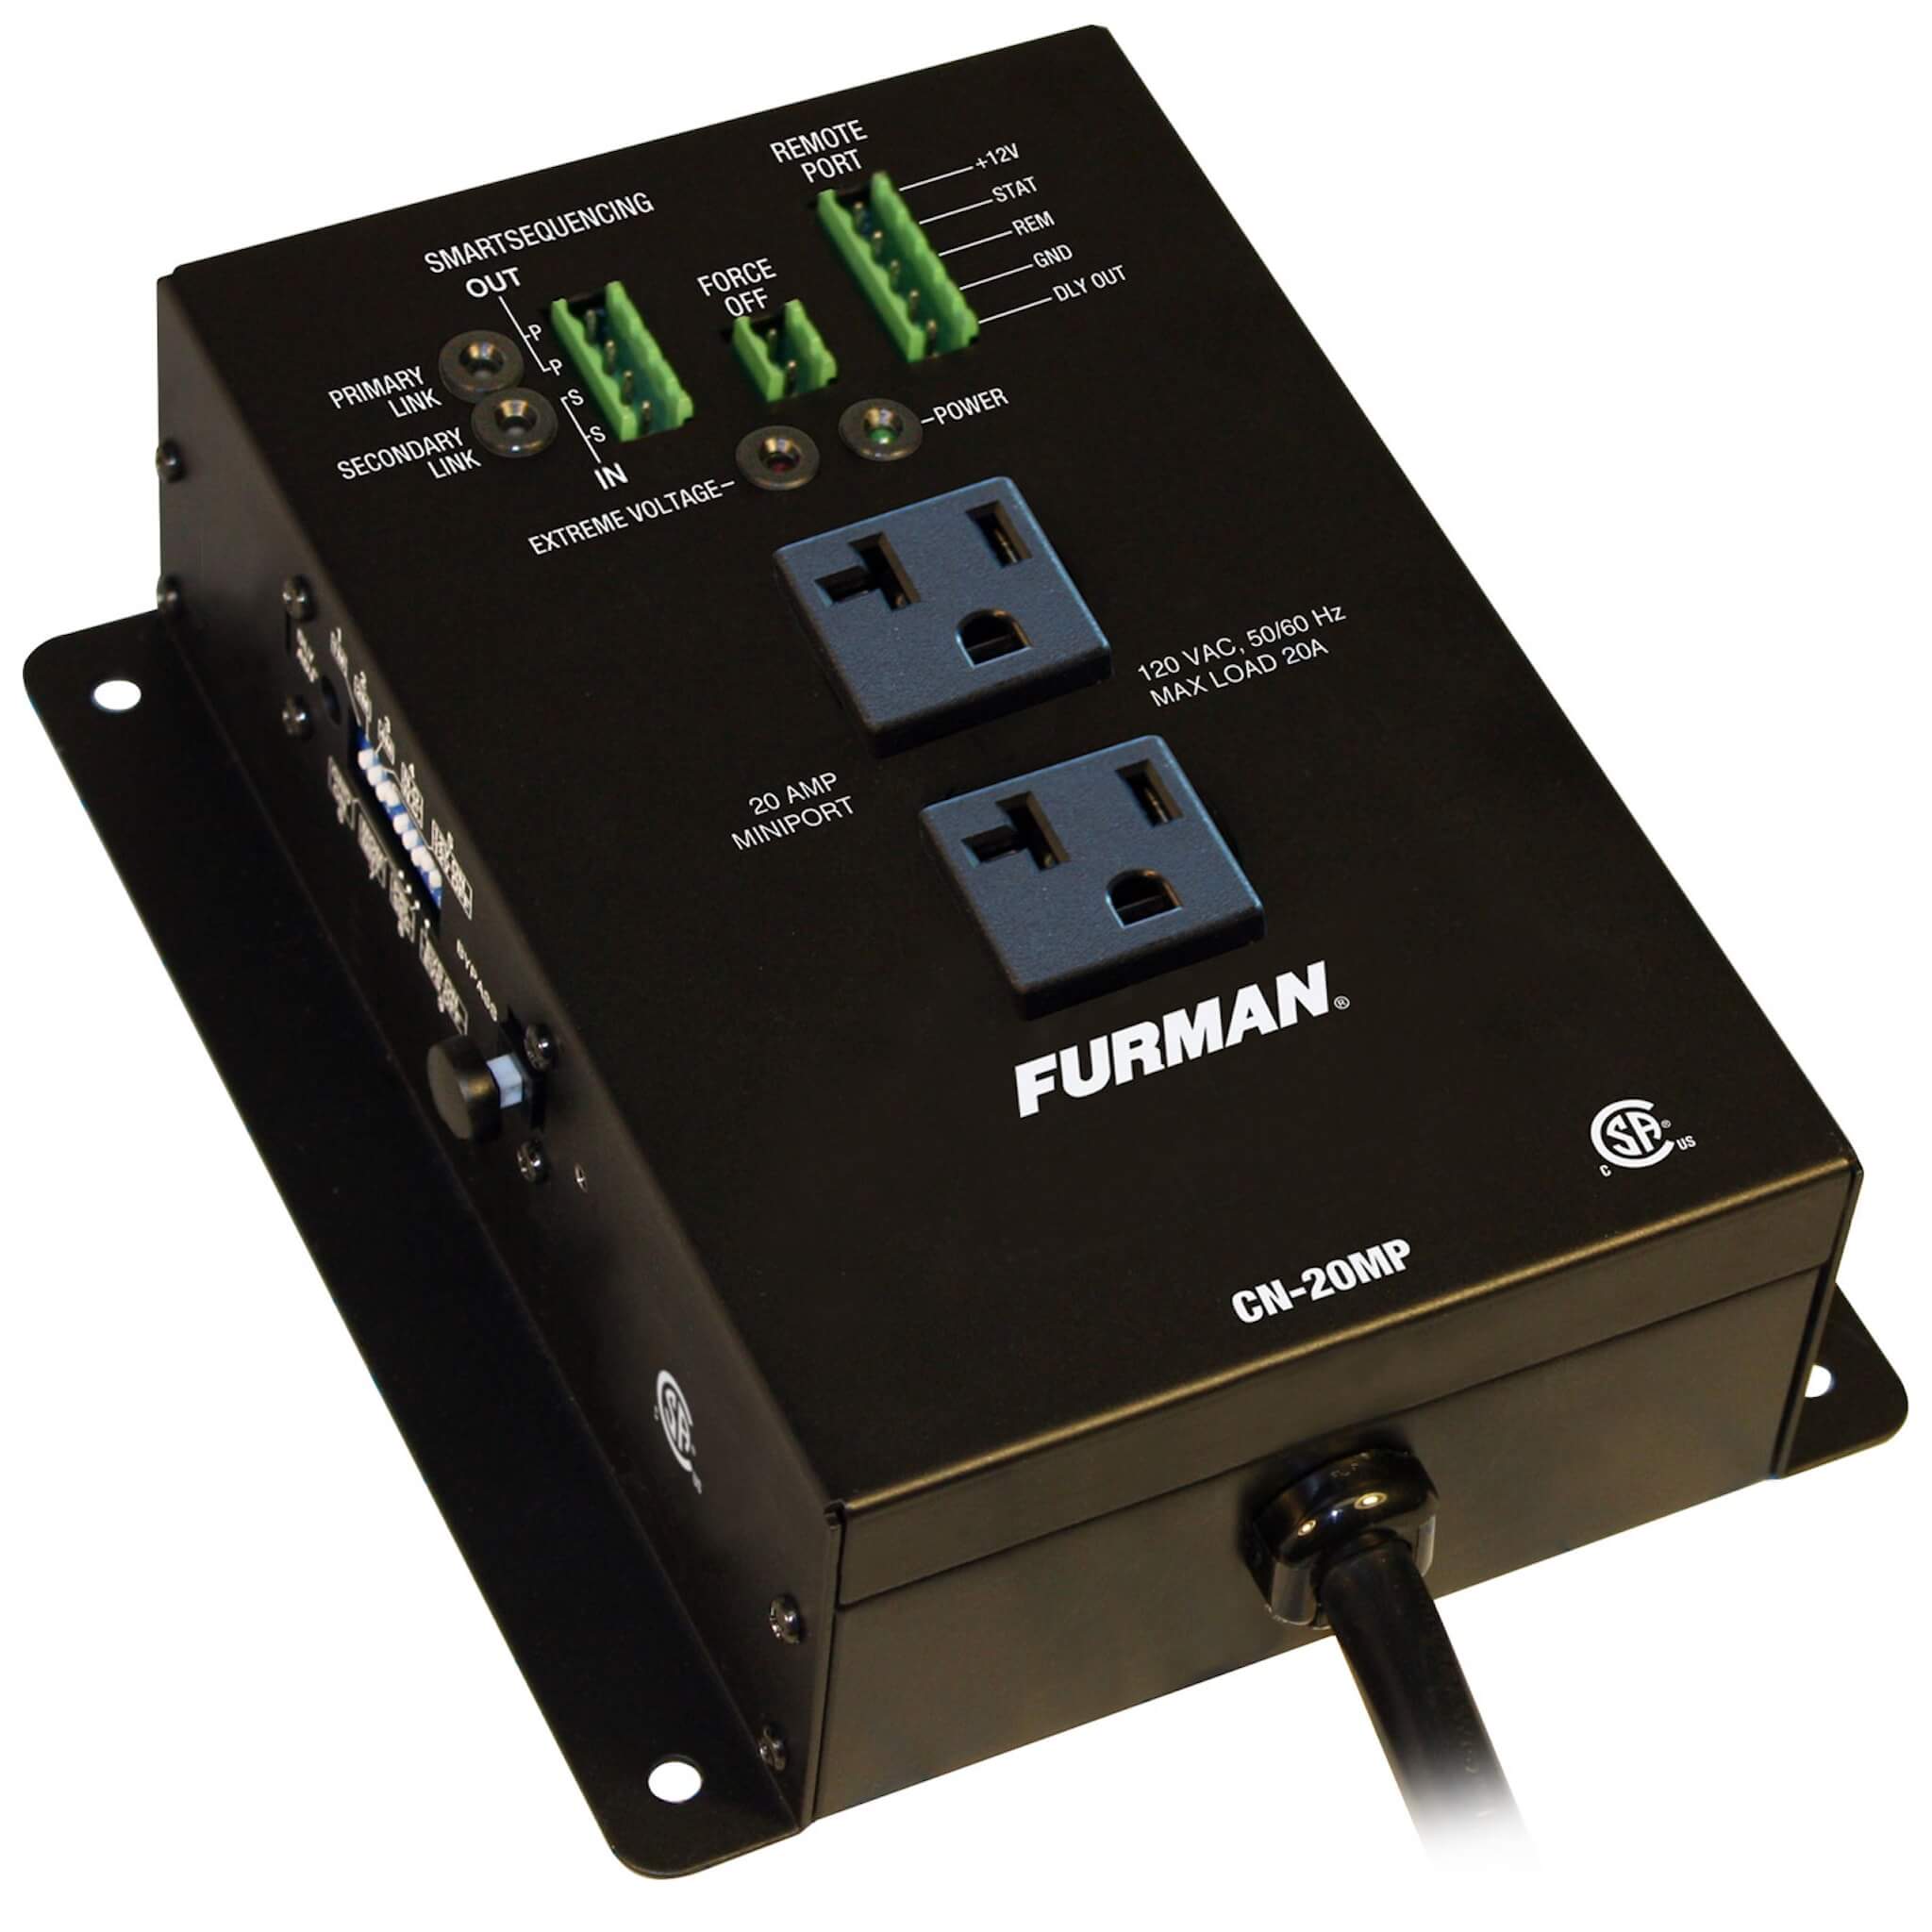 Furman CN-20MP - 20A MiniPort Smart Sequencer